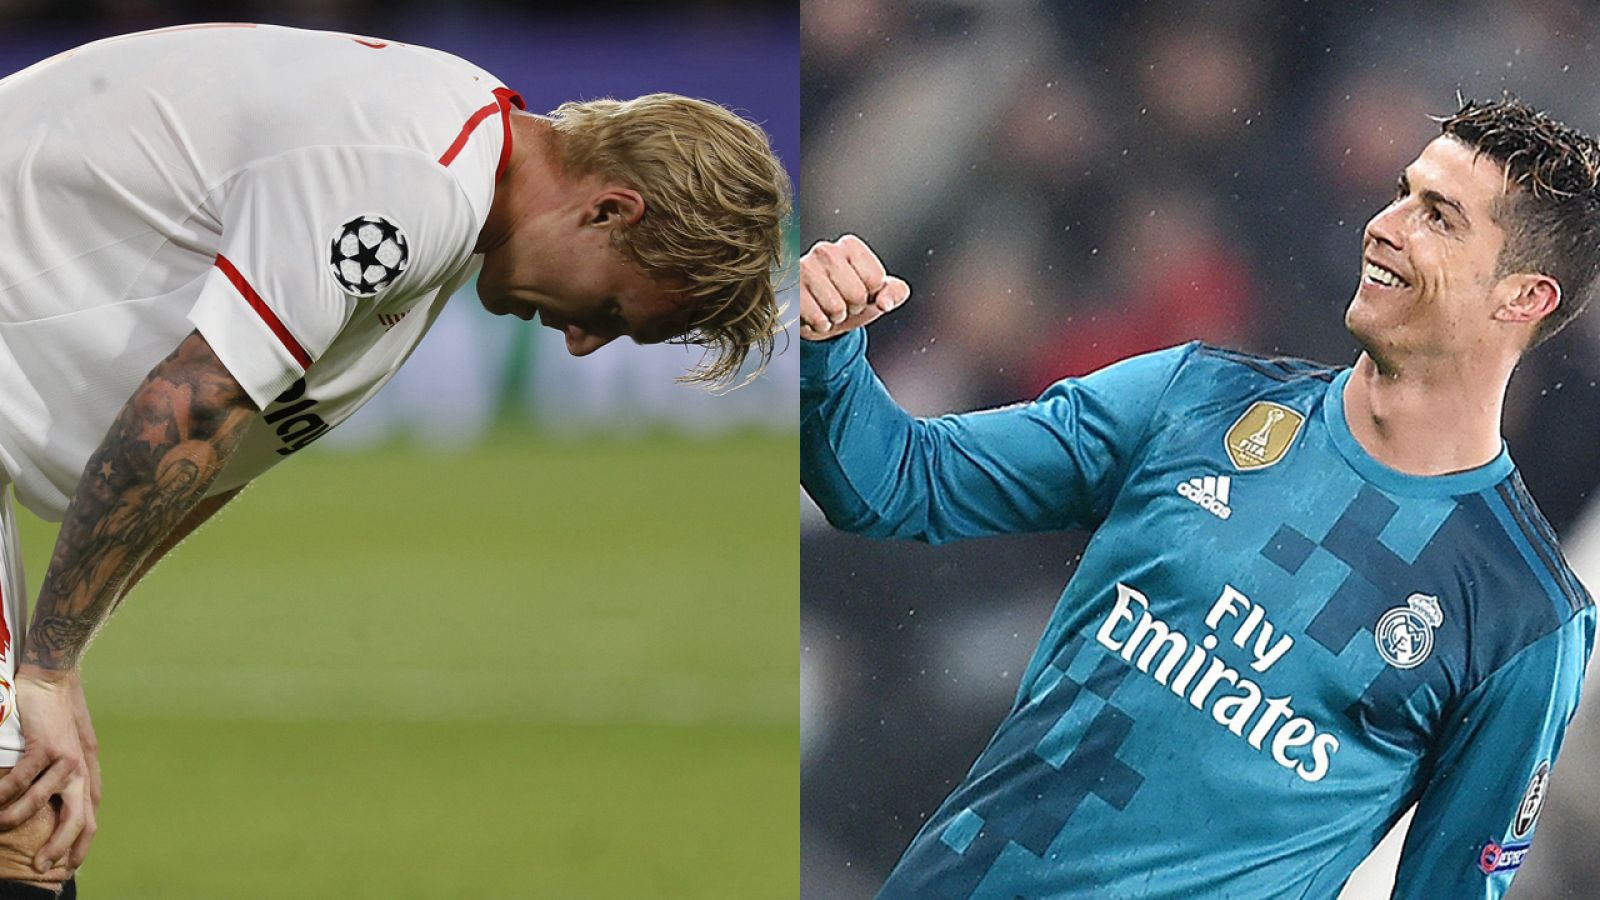 Cara y cruz, las claves de la actuación de Madrid y Sevilla en sus partidos